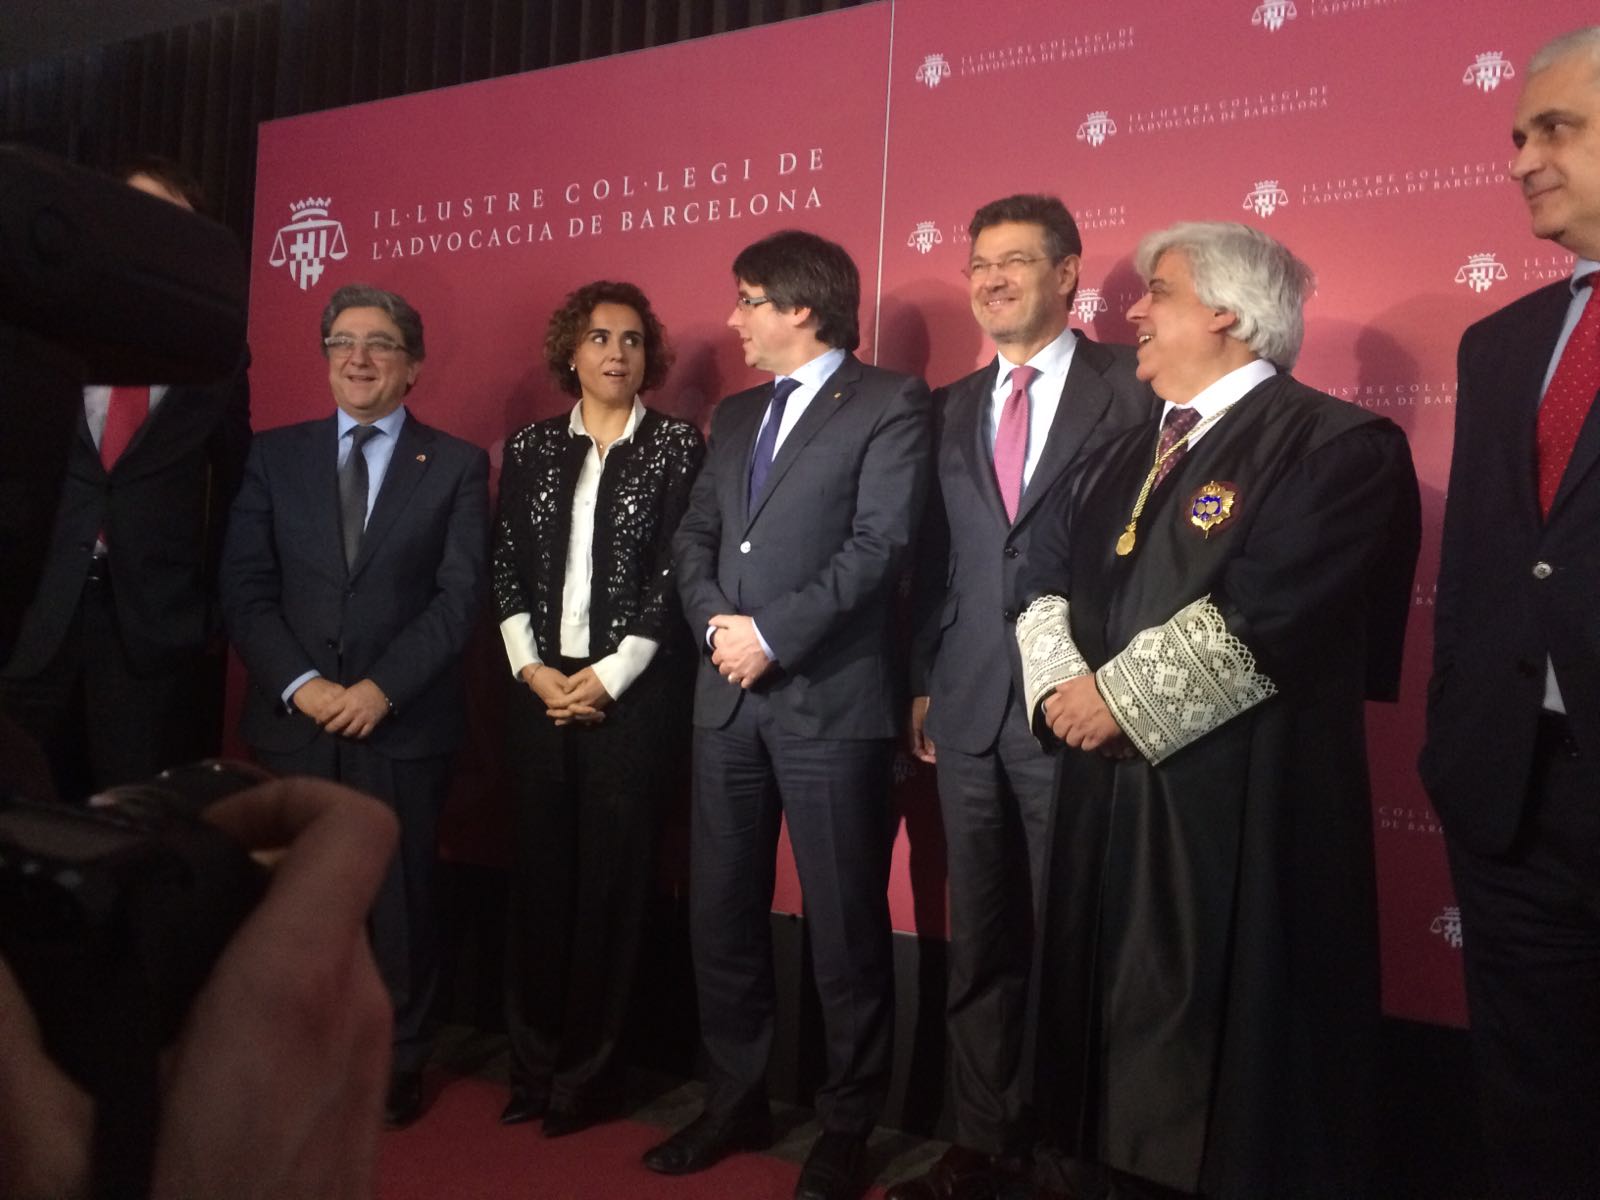 Puigdemont y Catalá se enfrentan por el proceso en un acto con abogados en Barcelona